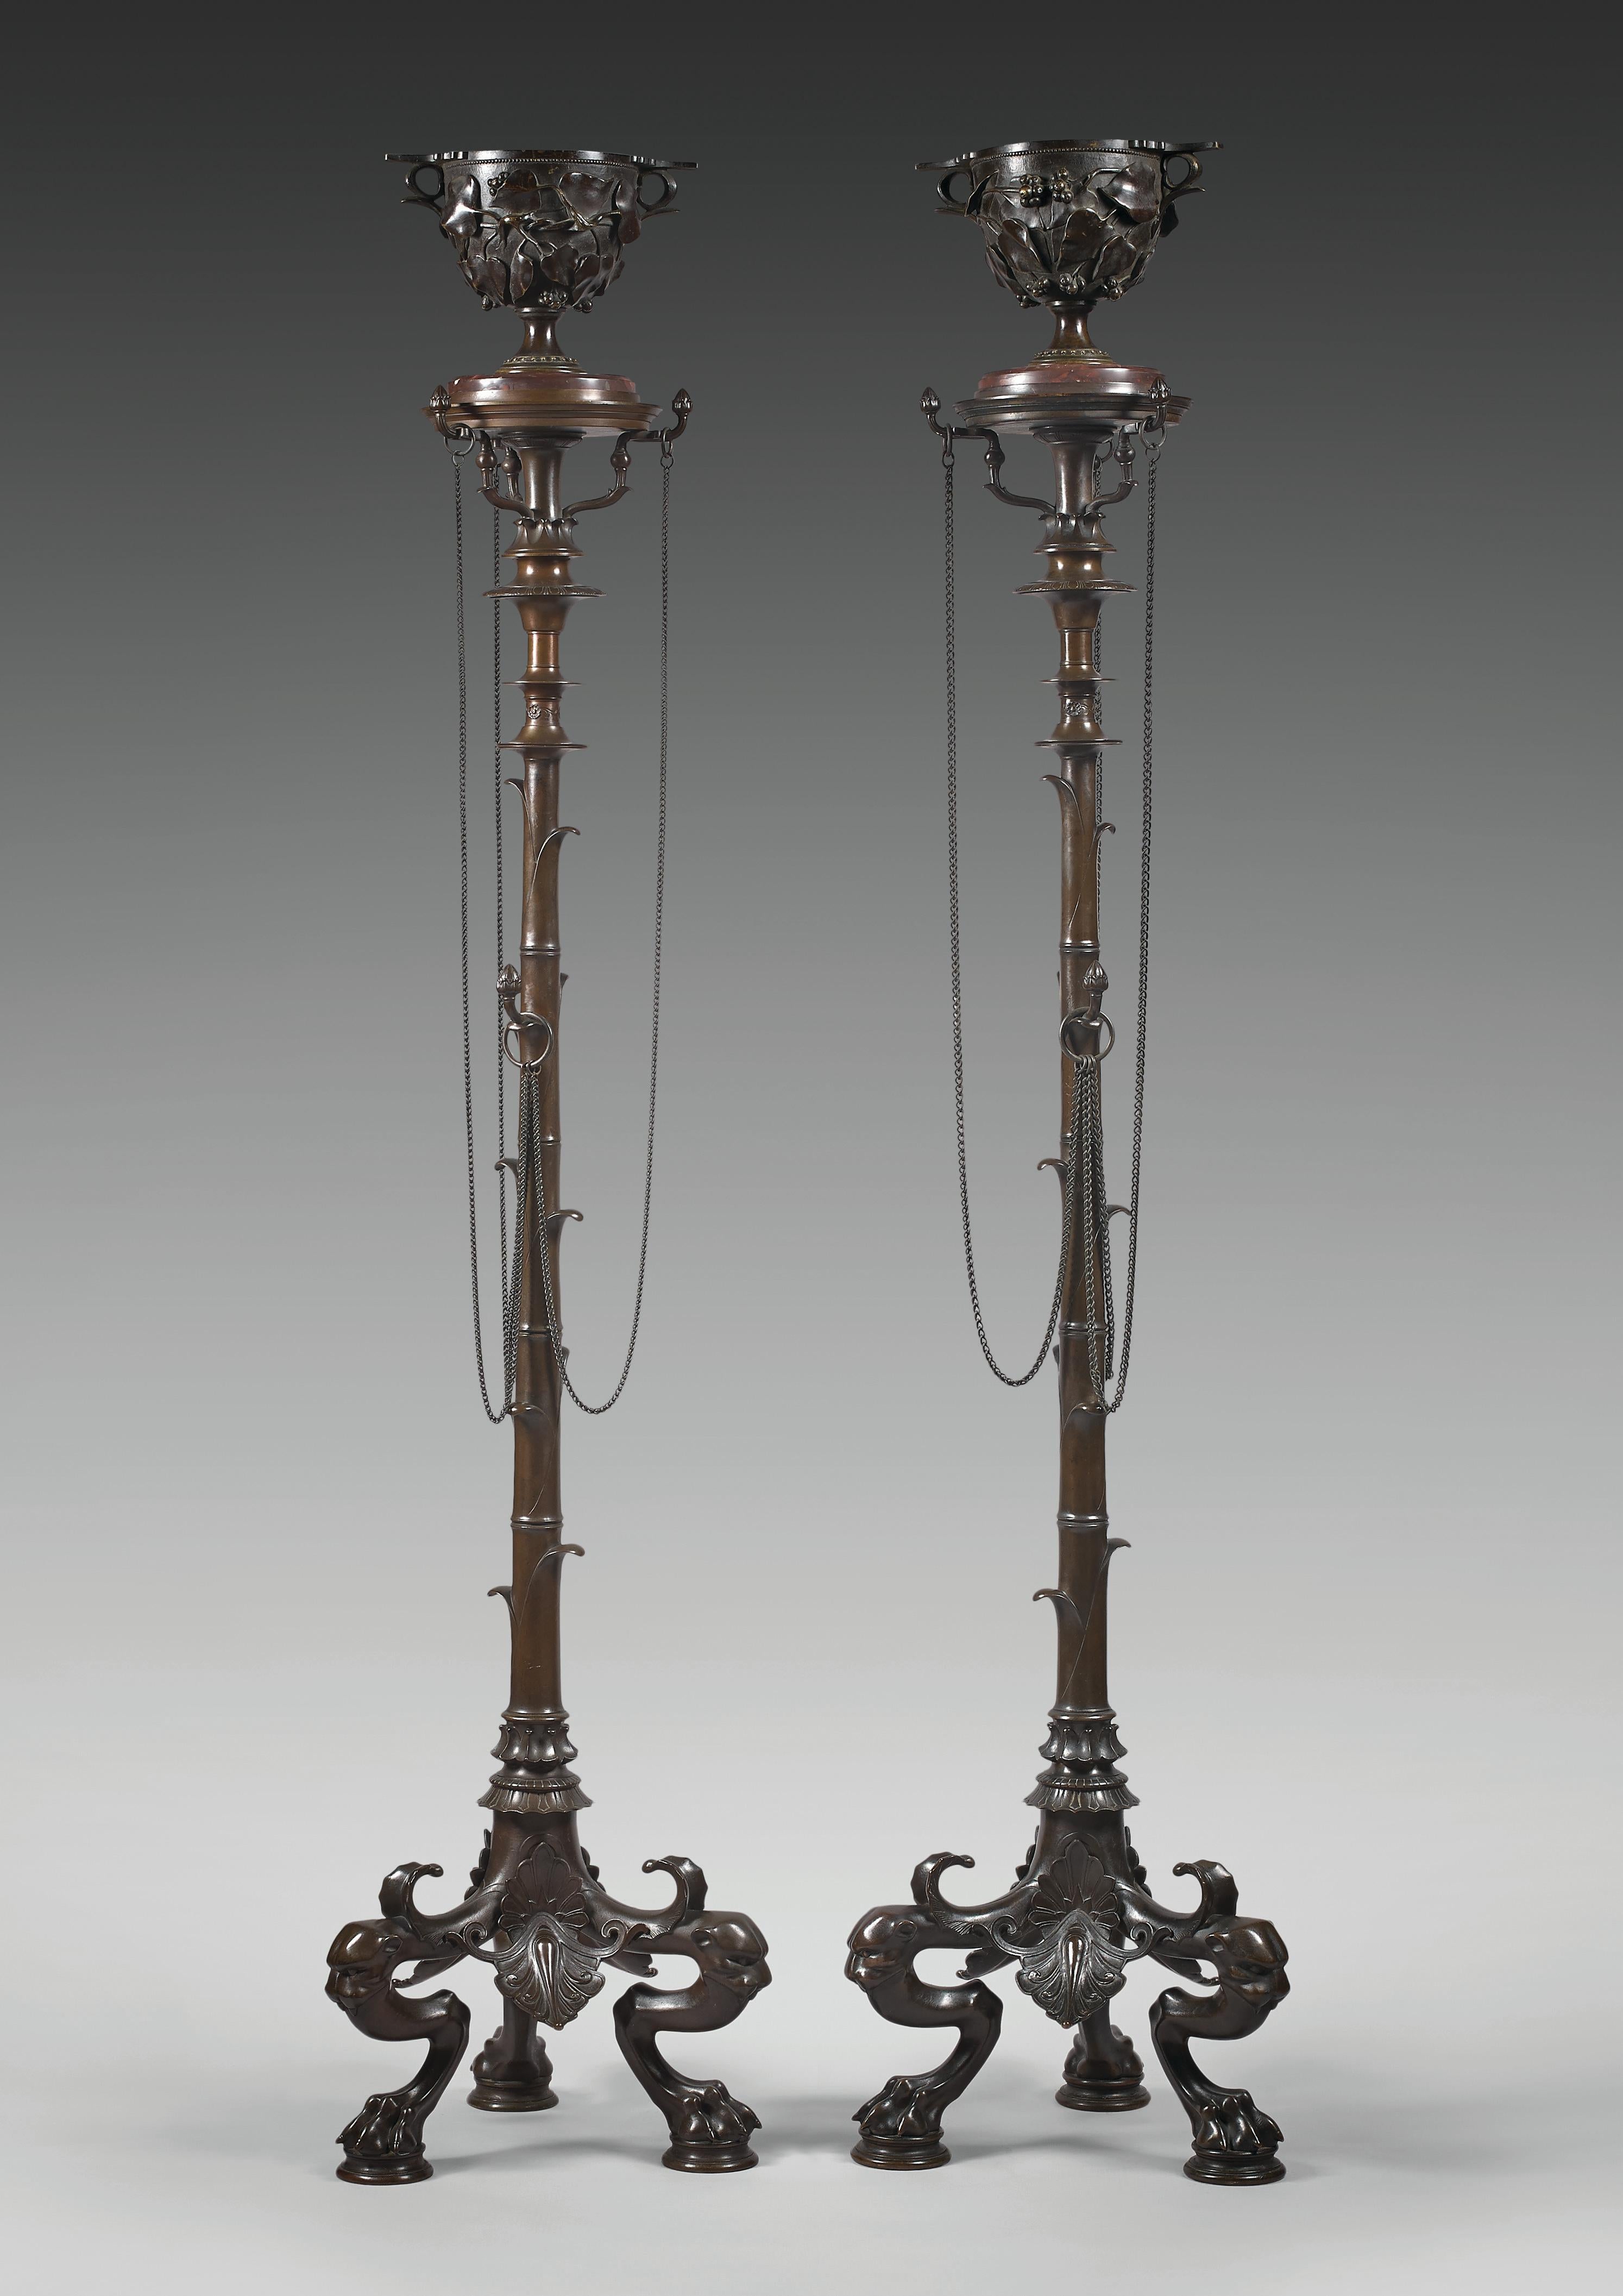 Un modèle similaire présenté à l'Exposition universelle de Paris en 1855

Hauteur totale : 154 cm (60 5/8 in.) ; Largeur : 33 x 33 cm (13 x 13 in.)
Tasse : hauteur 17 cm (6 ¾ in.)

Magnifique paire de chandeliers en bronze également appelés